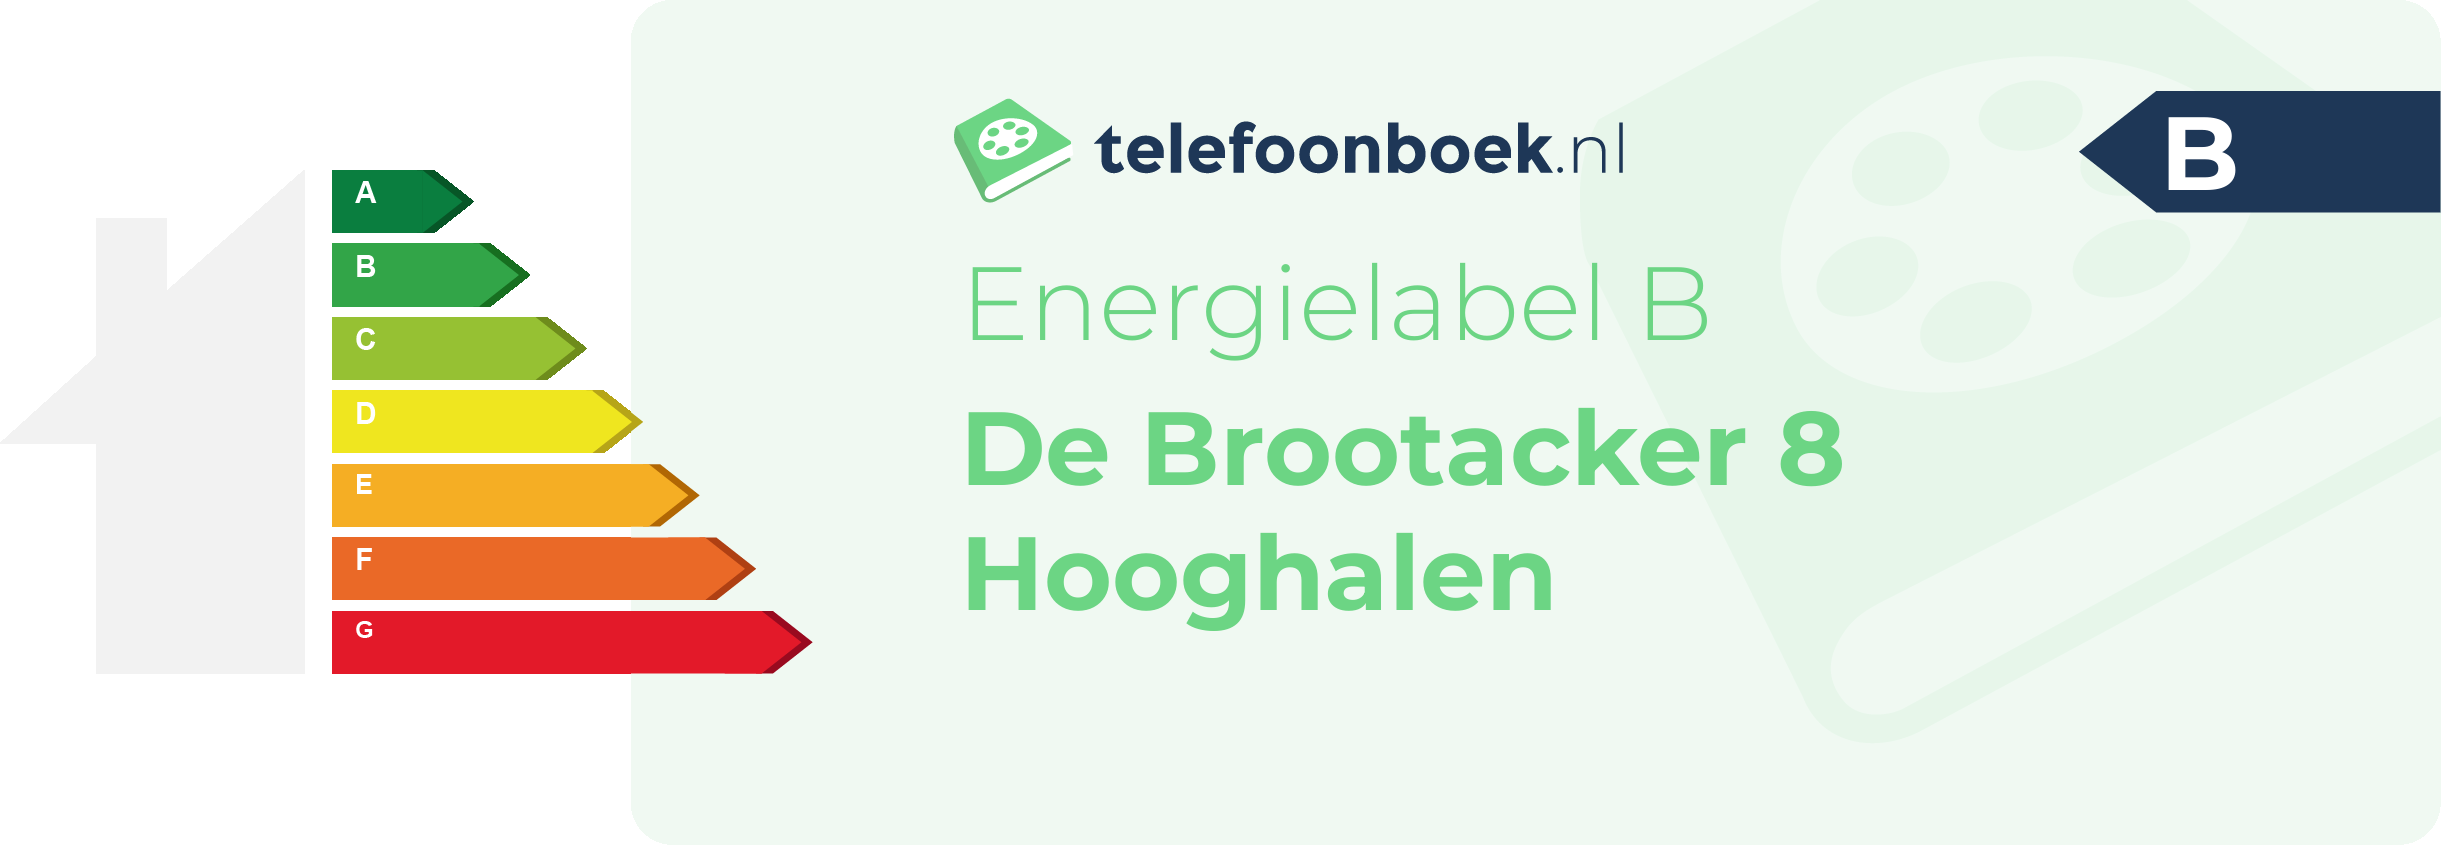 Energielabel De Brootacker 8 Hooghalen